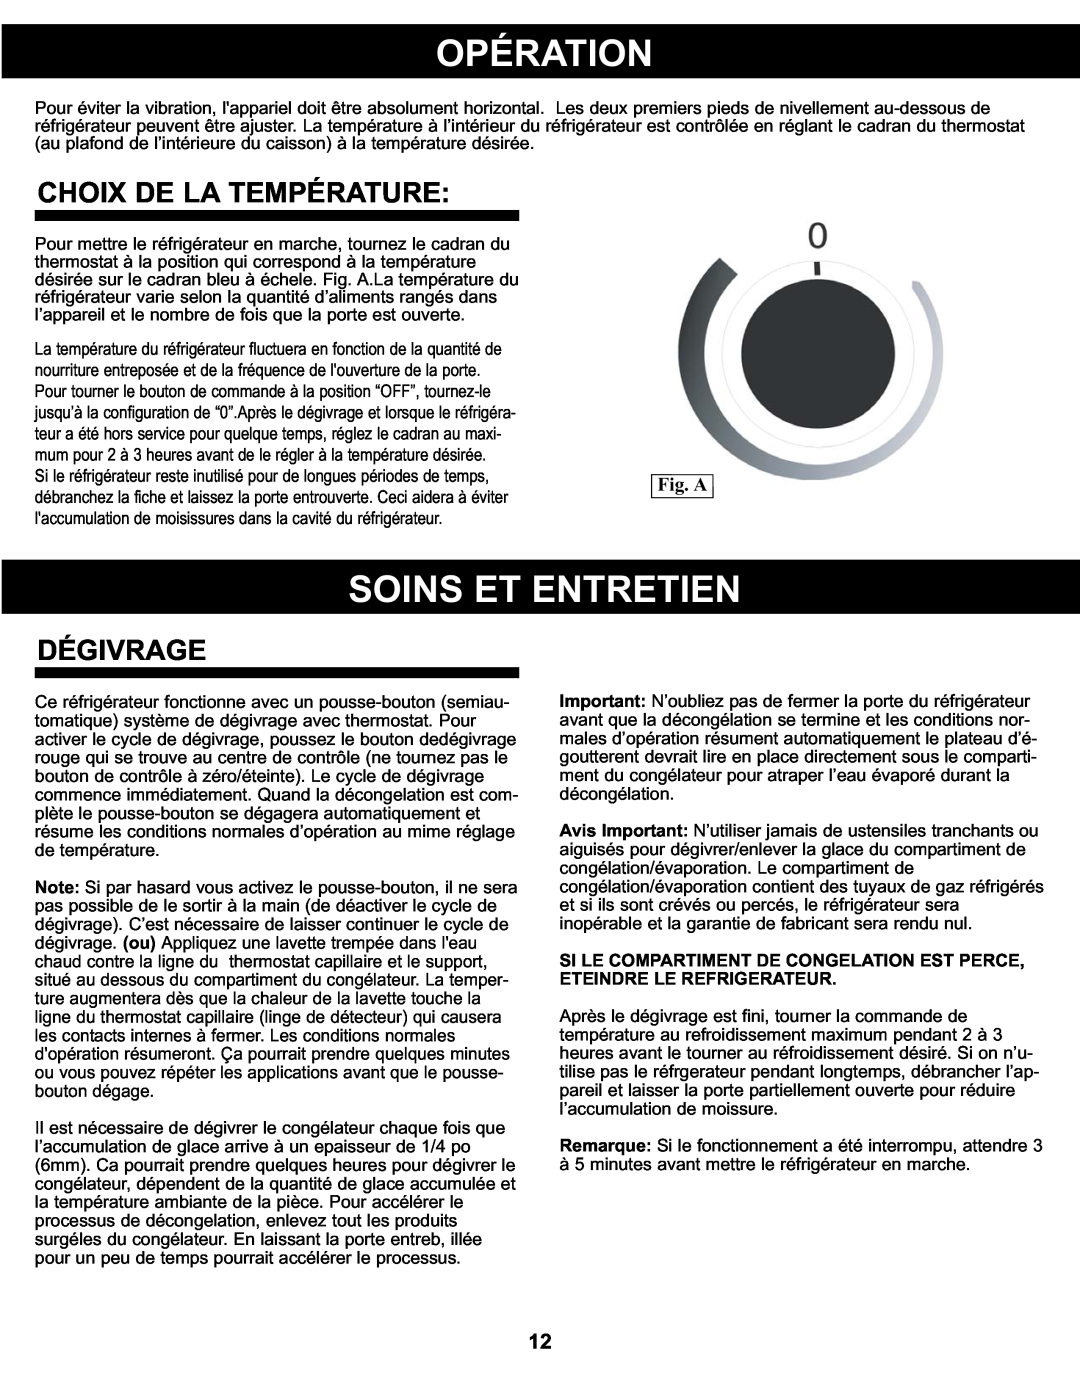 Danby DCR122WDD manual Opération, Soins Et Entretien, Choix De La Température, Dégivrage, Fig. A 